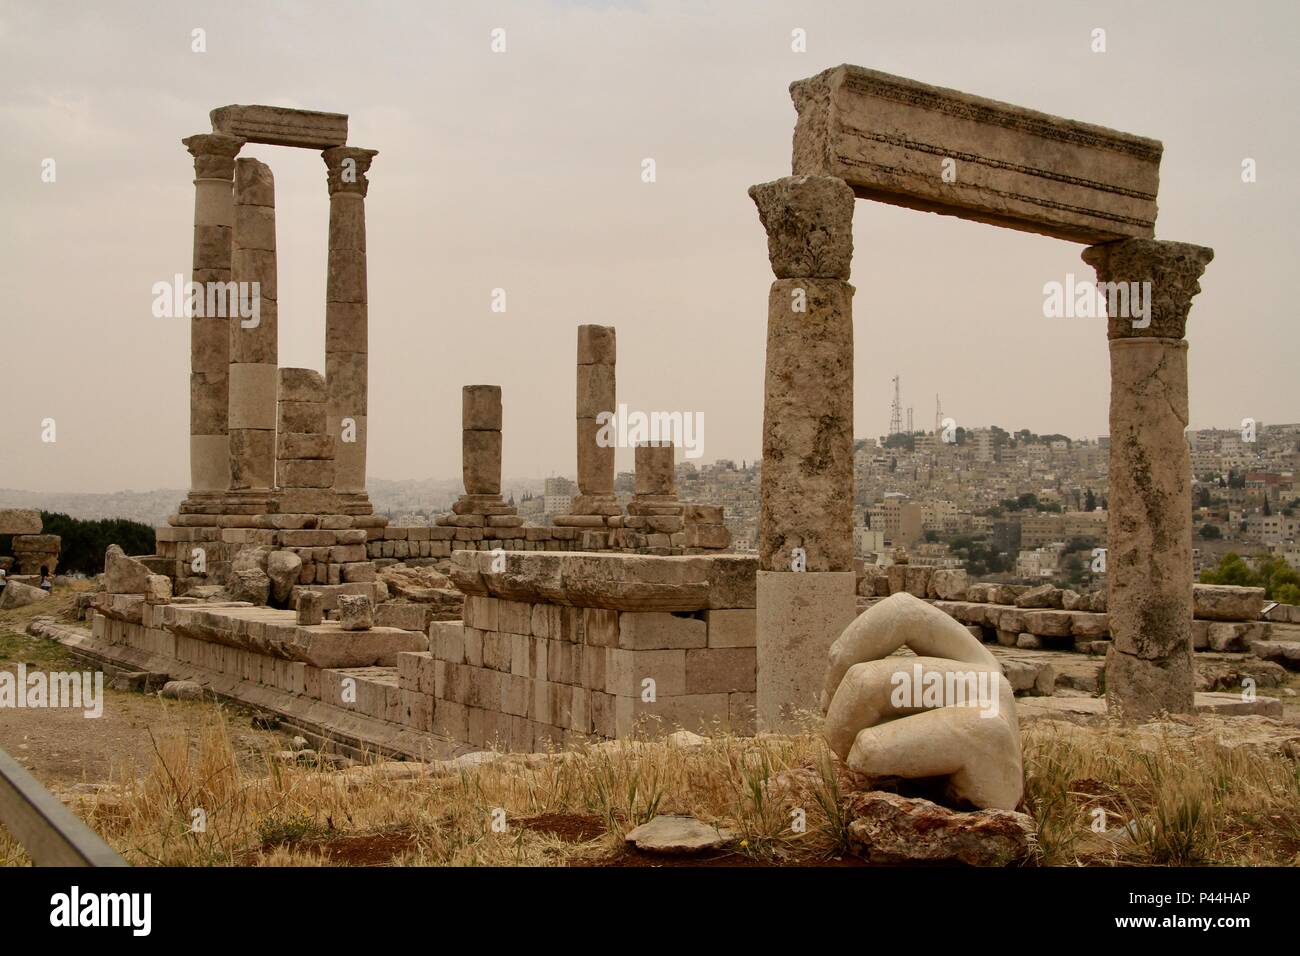 Temple of Hercules, Amman Stock Photo